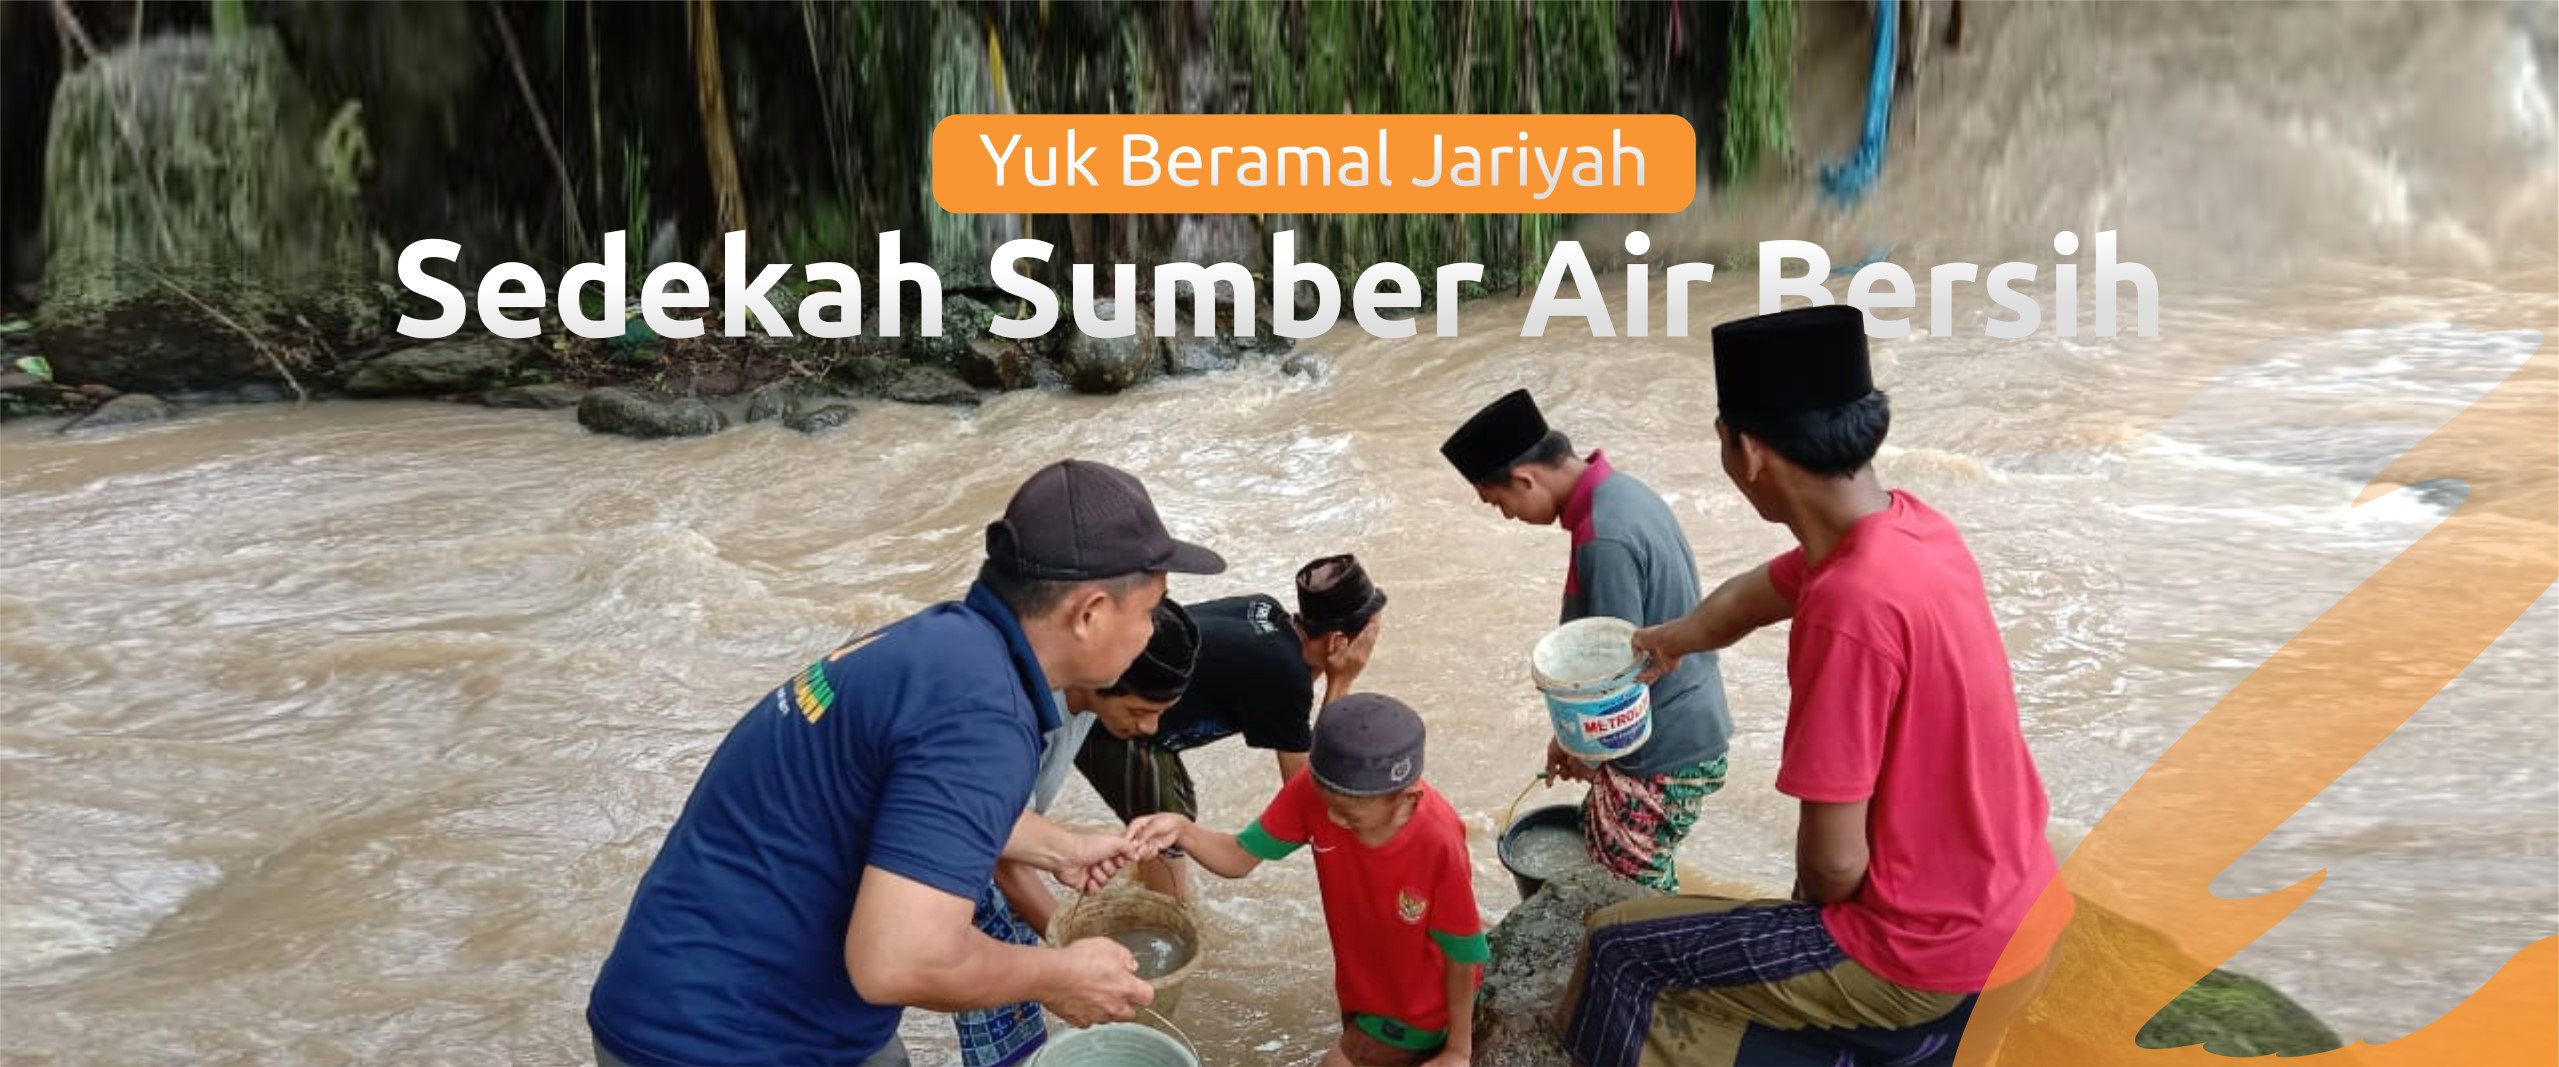 Sedekah Sumber Air Bersih - wahdah inspirasi zakat.jpeg